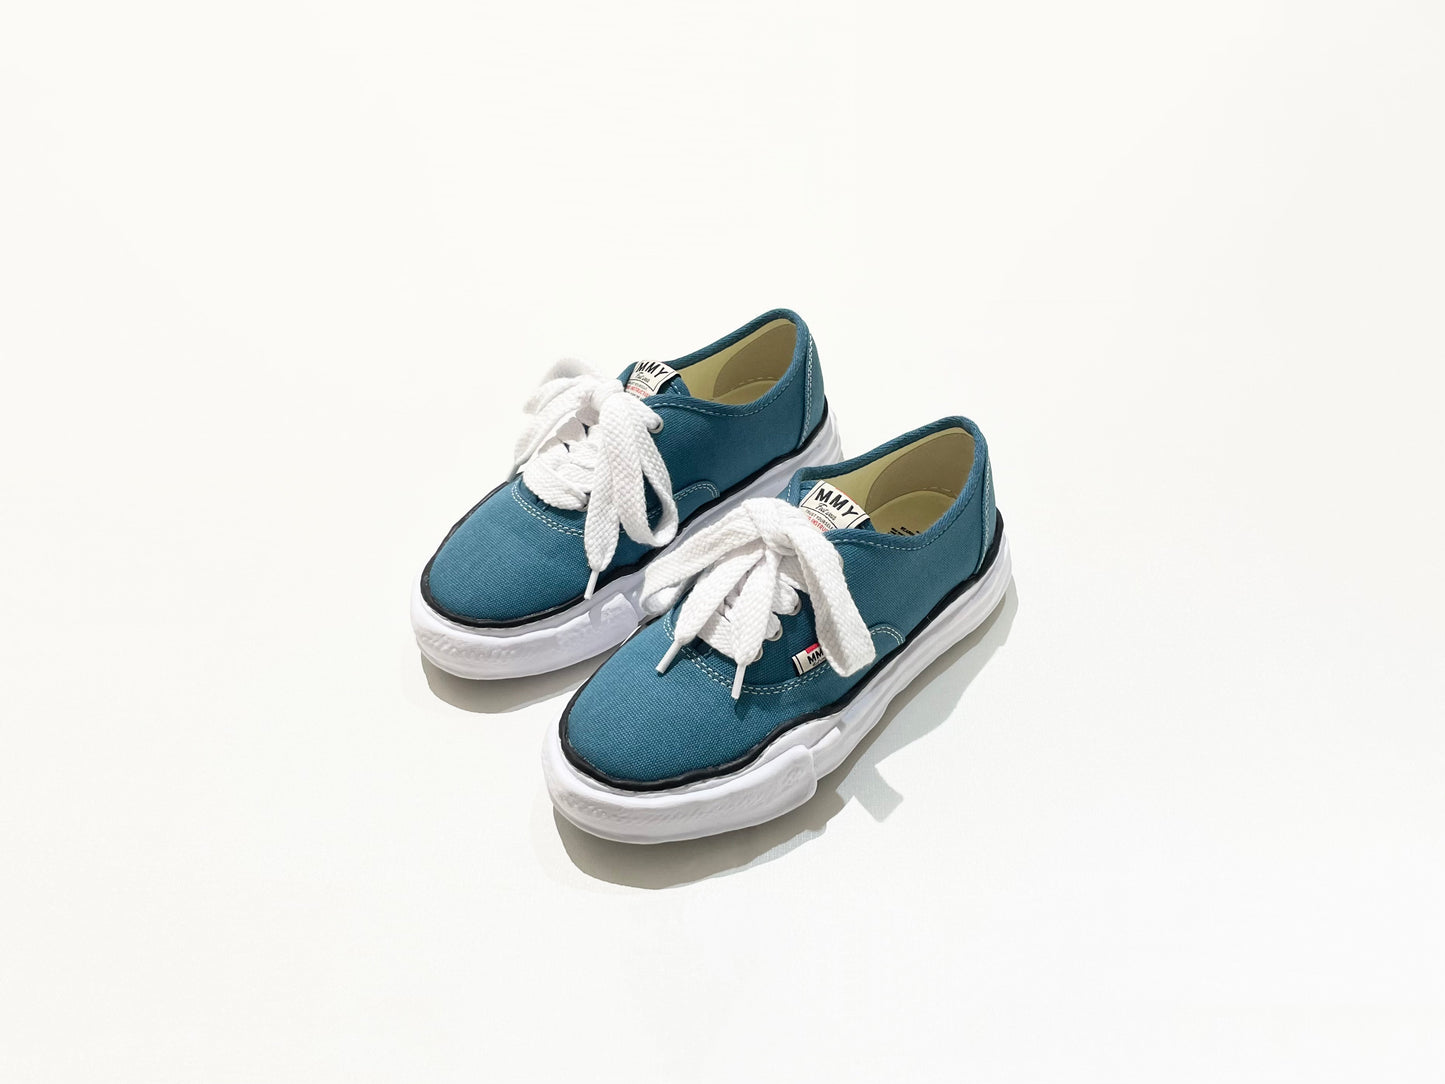 Maison Mihara Yasuhiro OG Sole Sneaker - Baker